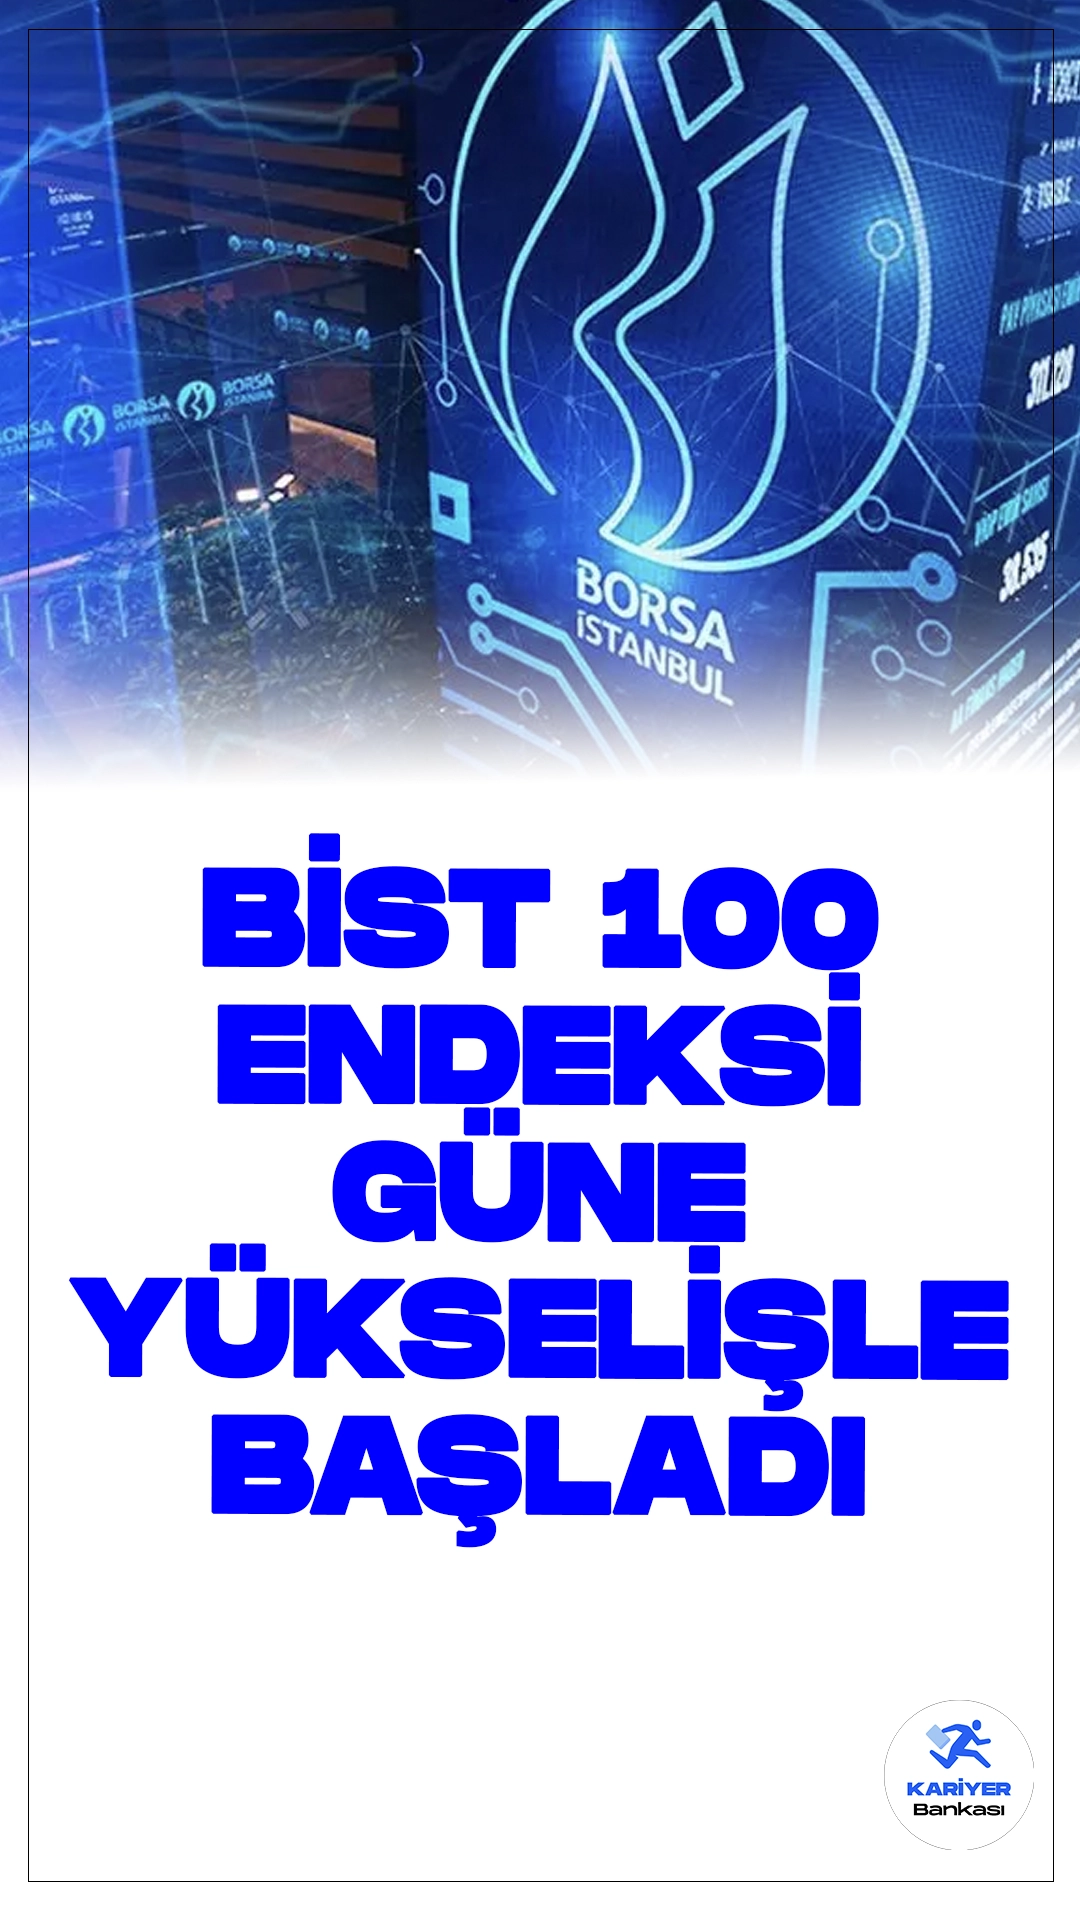 Borsa İstanbul Güne Yükselişle Başladı.Borsa İstanbul'da BIST 100 endeksi, güne yüzde 0,39 yükselişle 10.391,45 puandan başladı. Açılışta BIST 100 endeksi, önceki kapanışa göre 40,50 puan ve yüzde 0,39 artarak 10.391,45 puana çıktı.